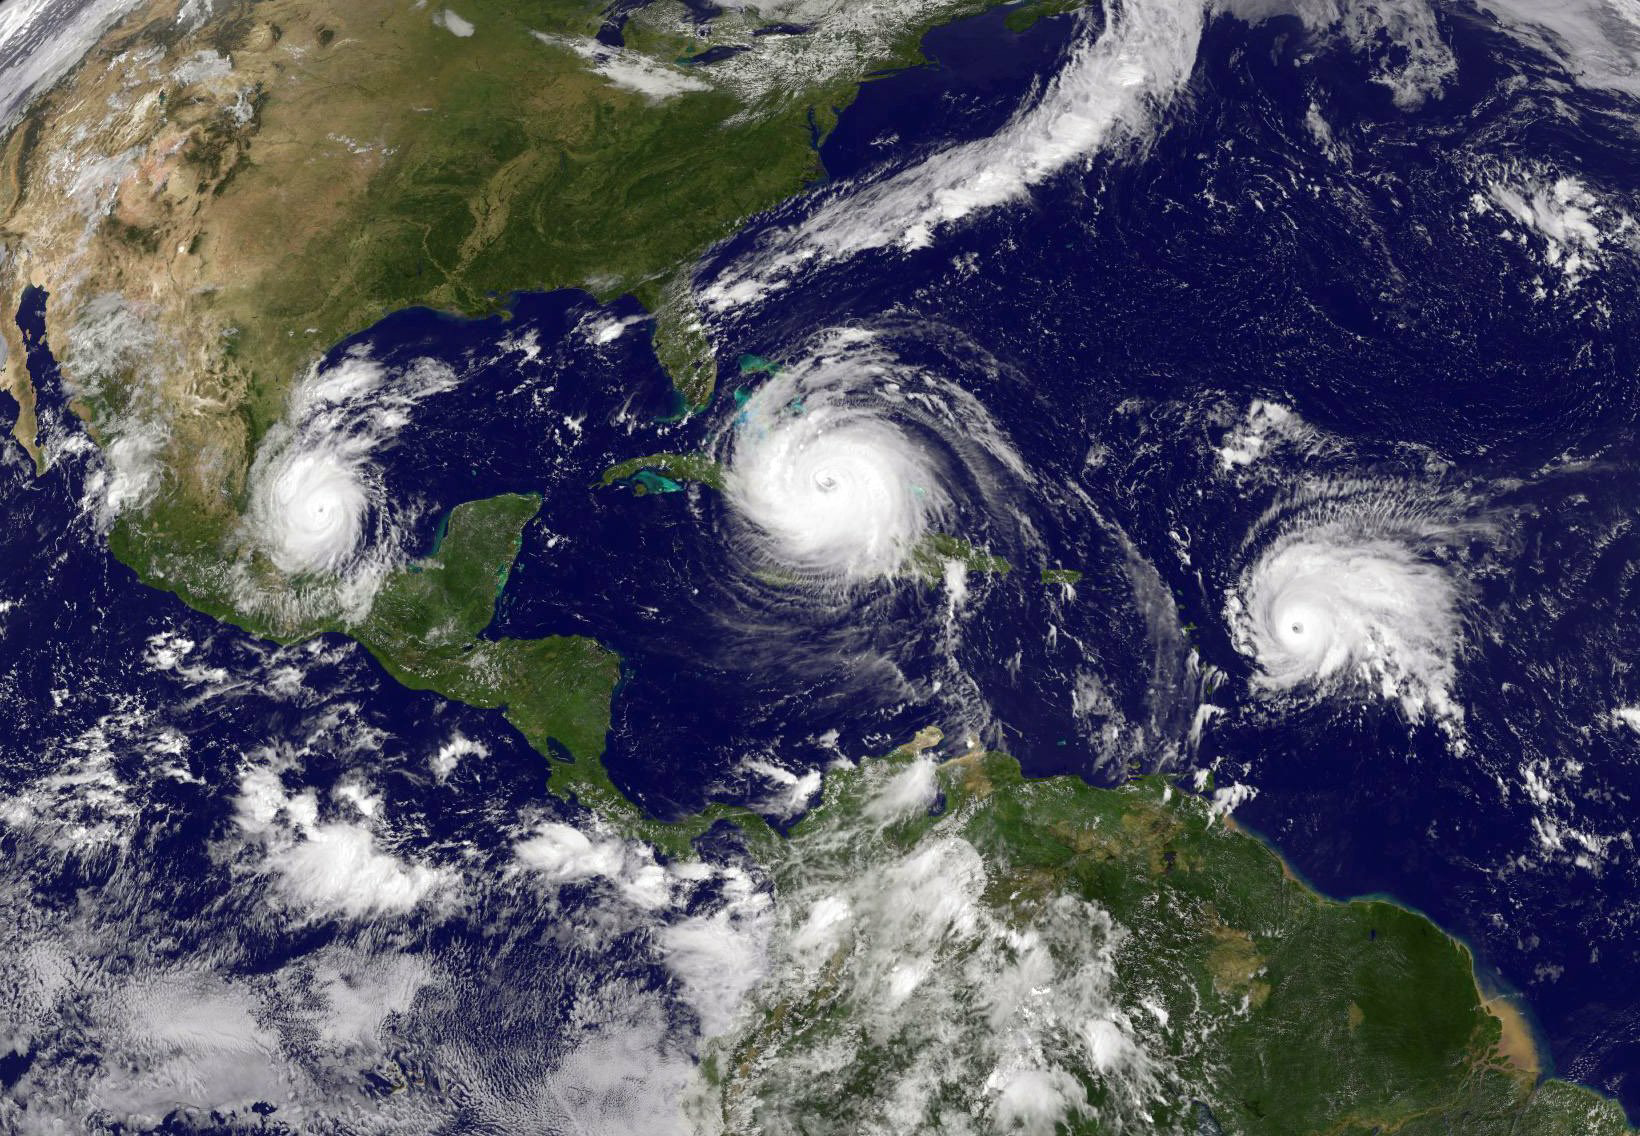 ثلاثة أعاصير تضرب خليج المكسيك معًا، من اليسار لليمين هي كاتيا، إيرما الذي عدل مساره ليقترب من فلوريدا، ثم خوسيه (مواقع التواصل)